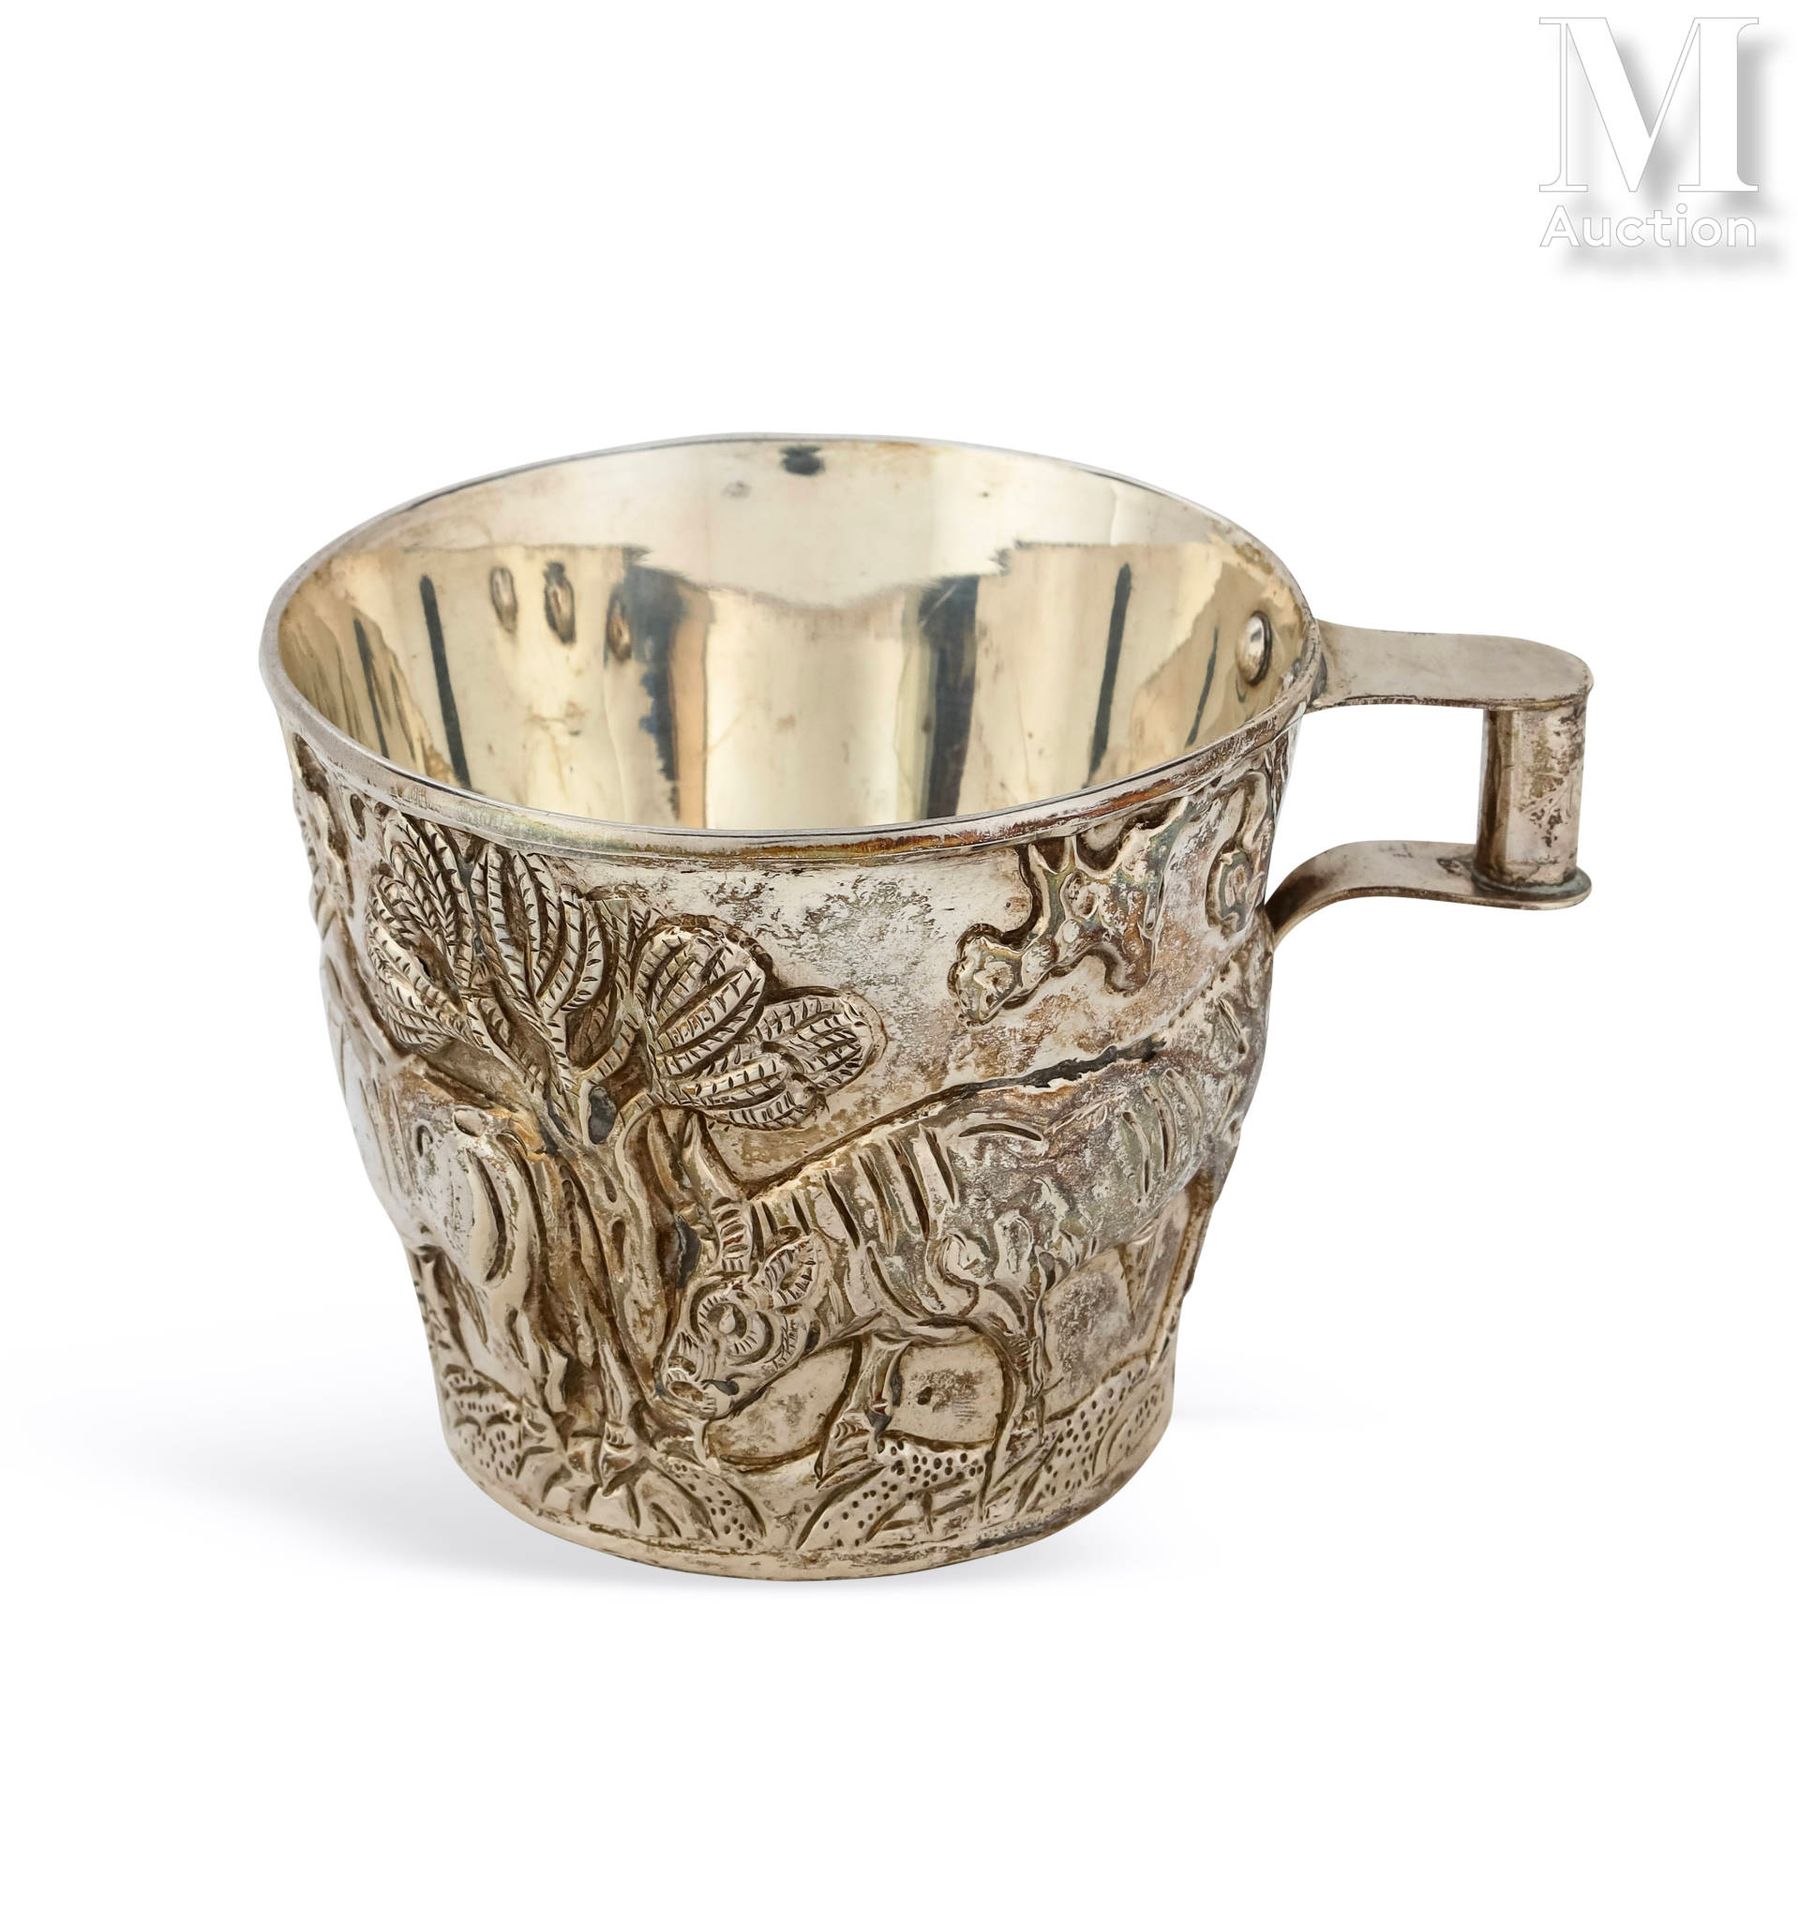 D'après le Trésor de Vaphio Cup
or goblet in silver with repoussé decoration of &hellip;